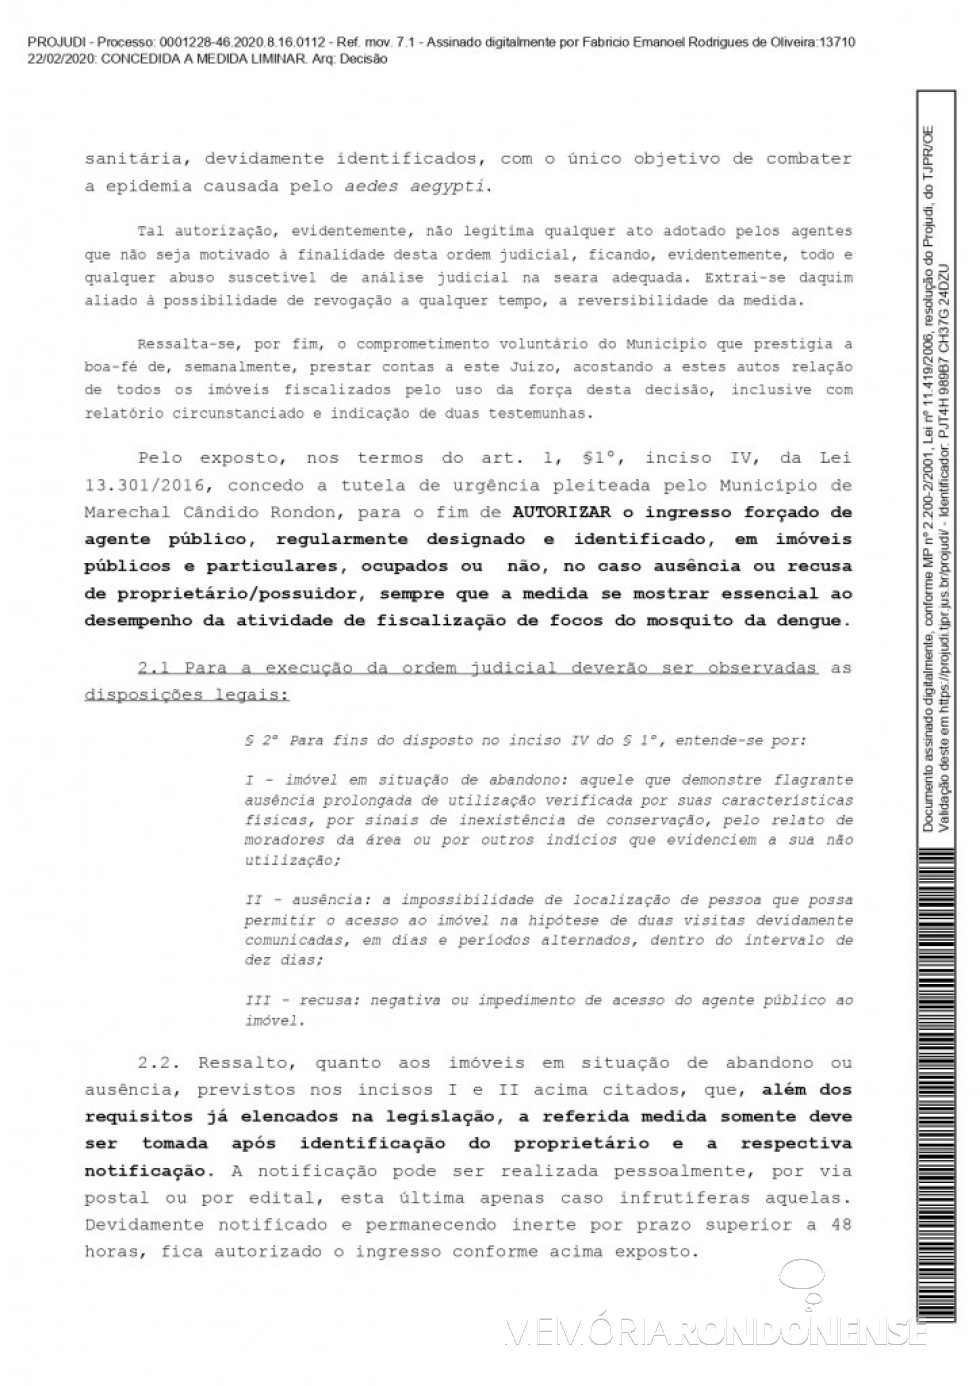 || Página 3 da liminar concedida pelo juiz de direito substituto Fabrício Emanoel Rodrigues de Oliveira em favor do município de Marechal Cândido Rondon, em fevereiro de 2020.
Imagem: Acervo Projeto Memória Rondonense - FOTO 12 - 